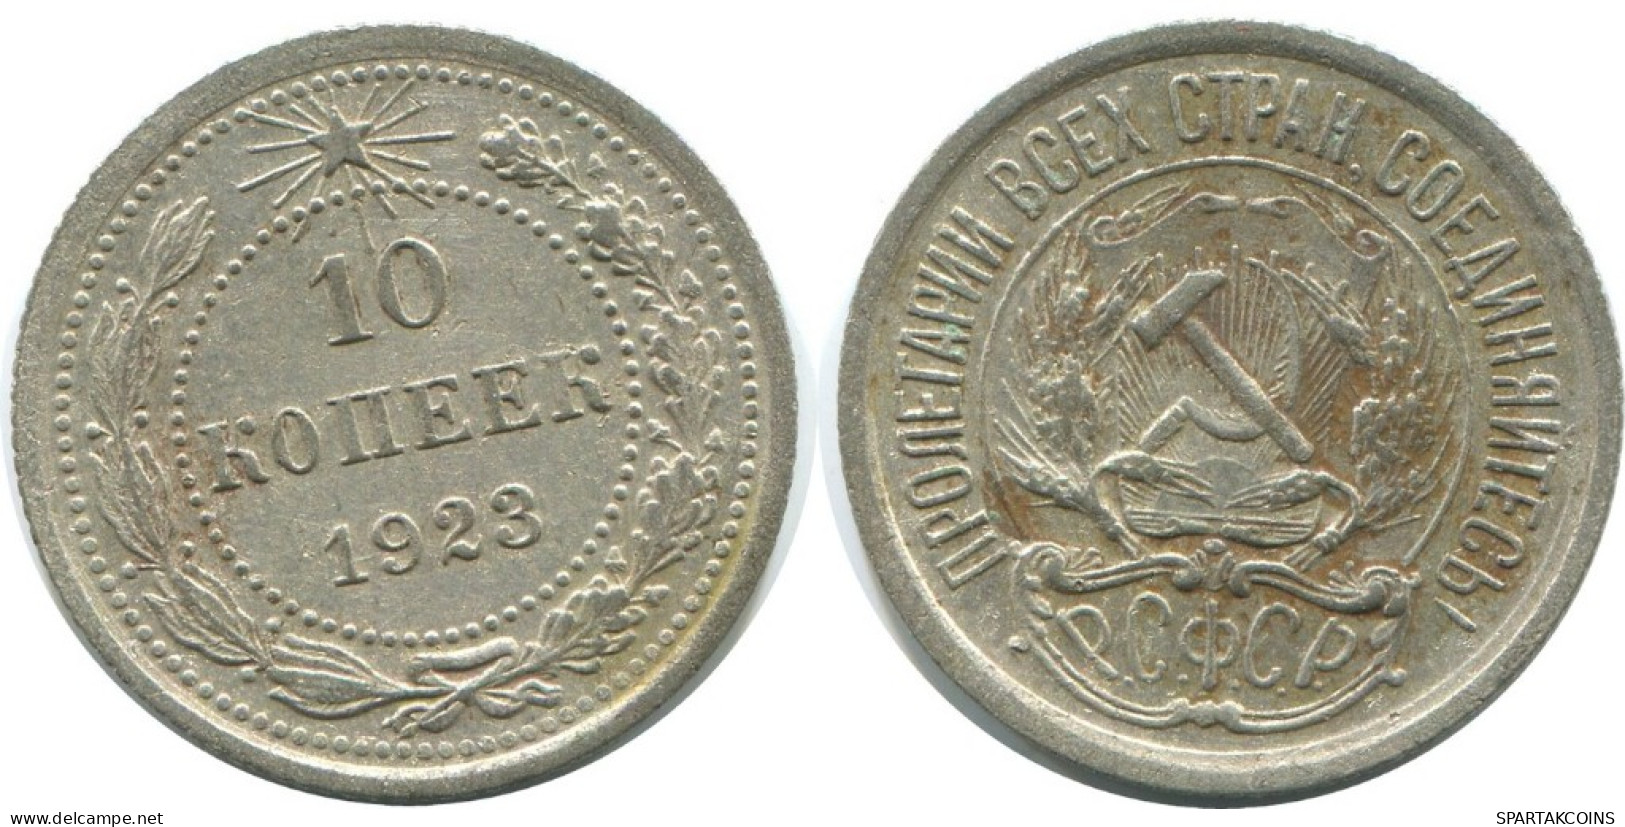 10 KOPEKS 1923 RUSSLAND RUSSIA RSFSR SILBER Münze HIGH GRADE #AE973.4.D.A - Russland